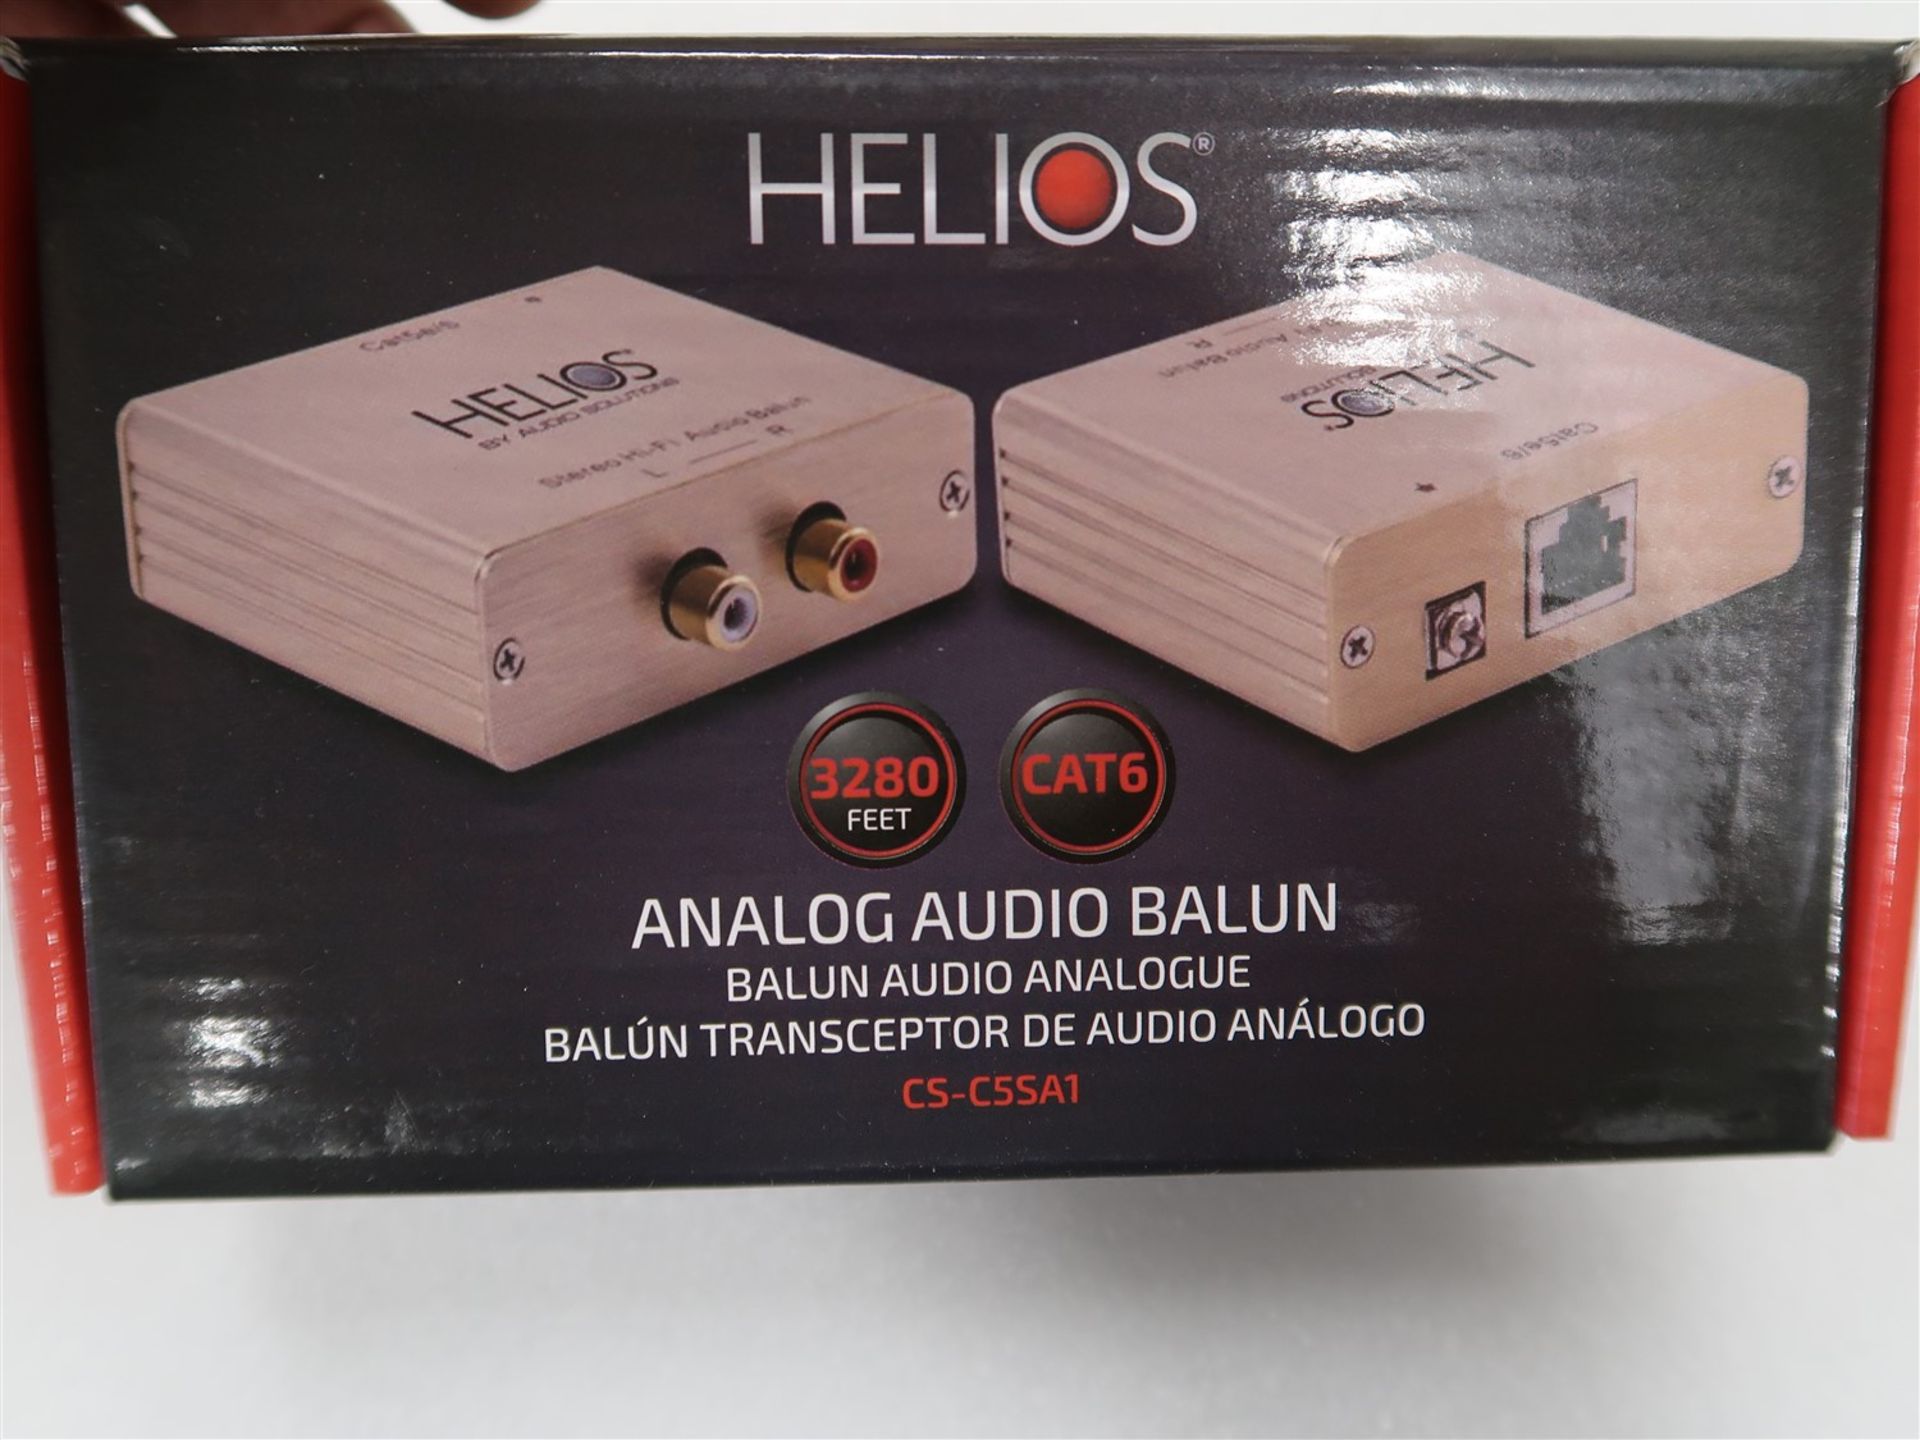 HELIOS ANALOG AUDIO BALUN CS-C5S A1 - Image 2 of 3